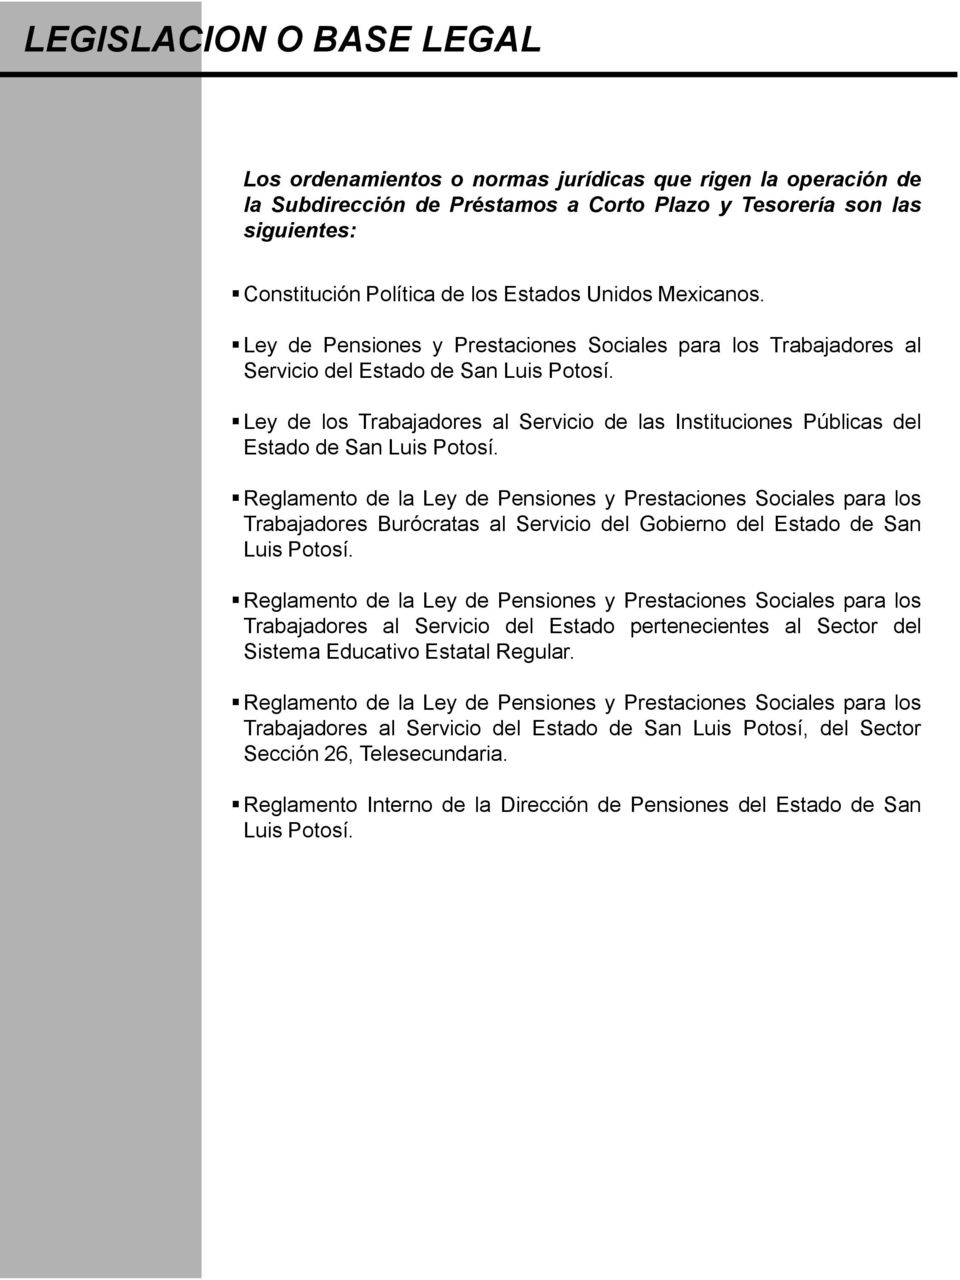 Ley de los Trabajadores al Servicio de las Instituciones Públicas del Estado de San Luis Potosí.